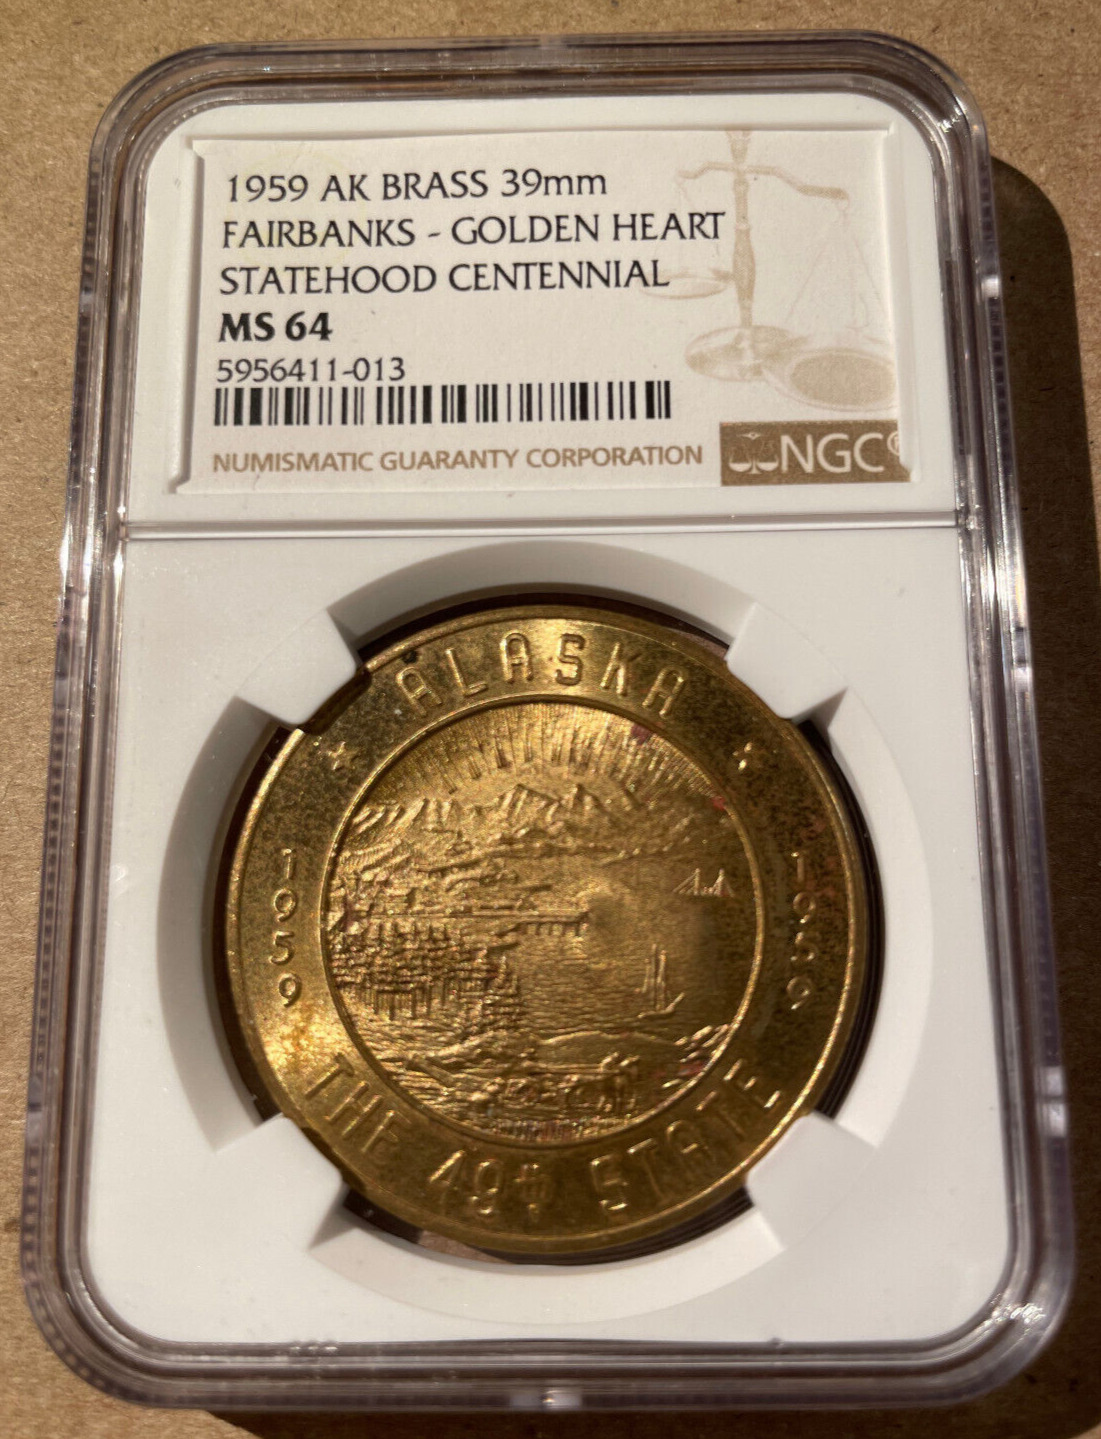 1959 AK Brass 39mm Fairbanks Golden Heart Statehood Centennial MS 64 - Alaska